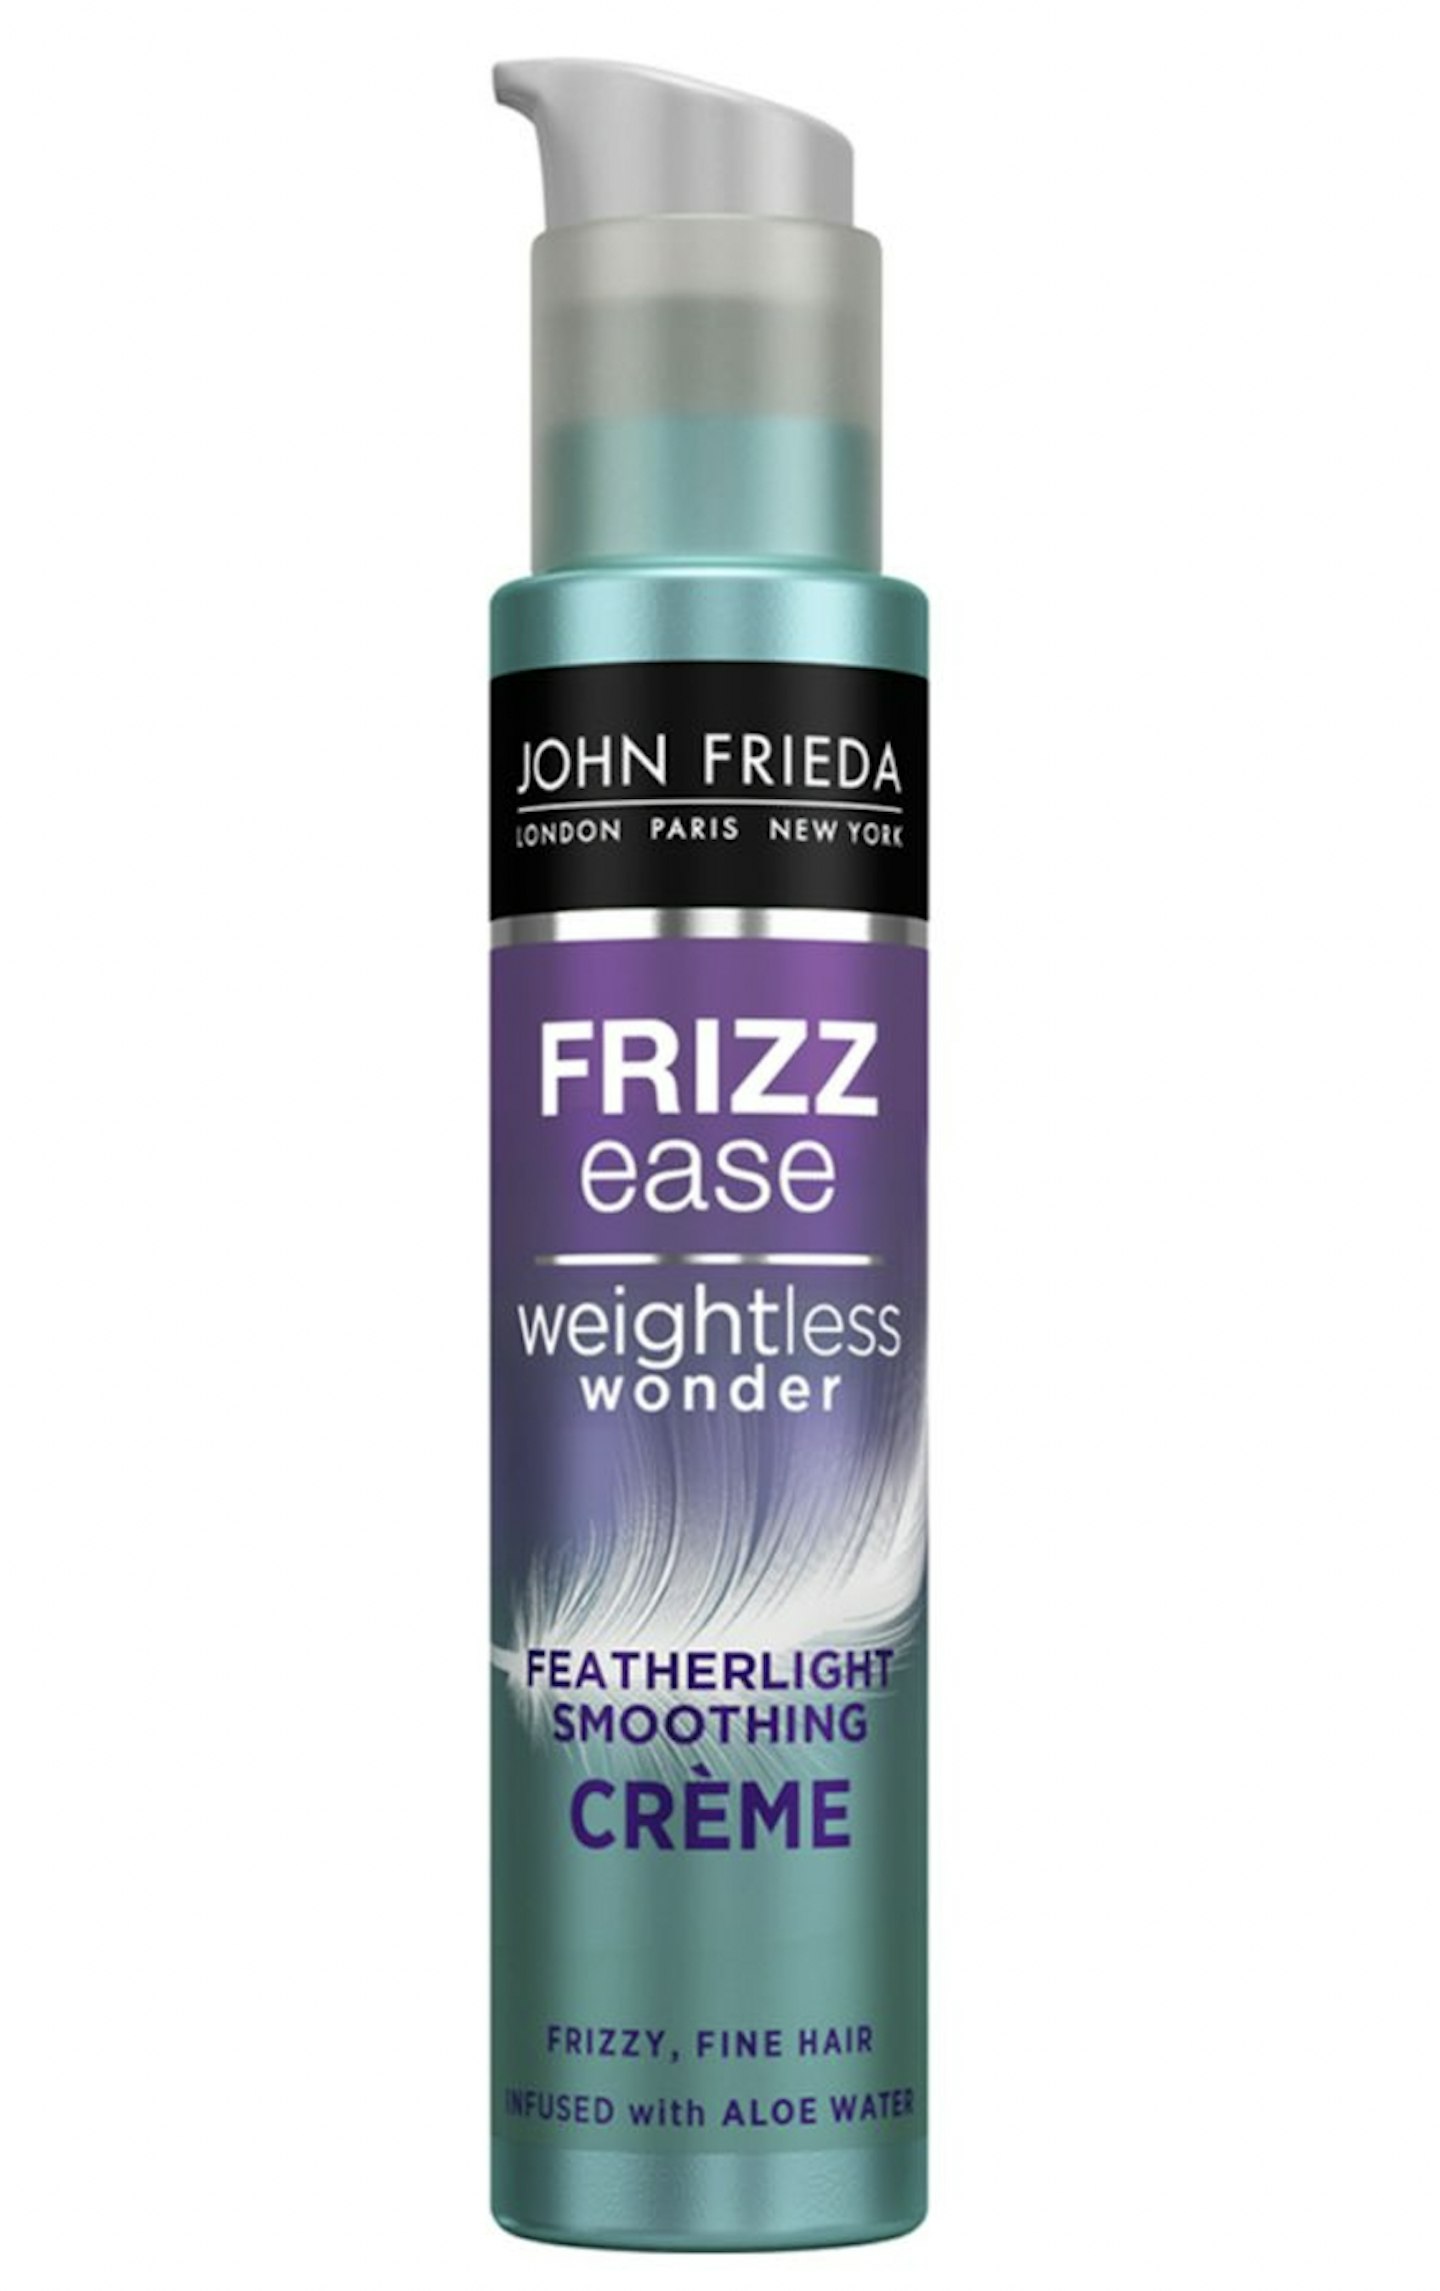 John Frieda Frizz Eaze Weightless Wonder Smoothing Creme, £6.99